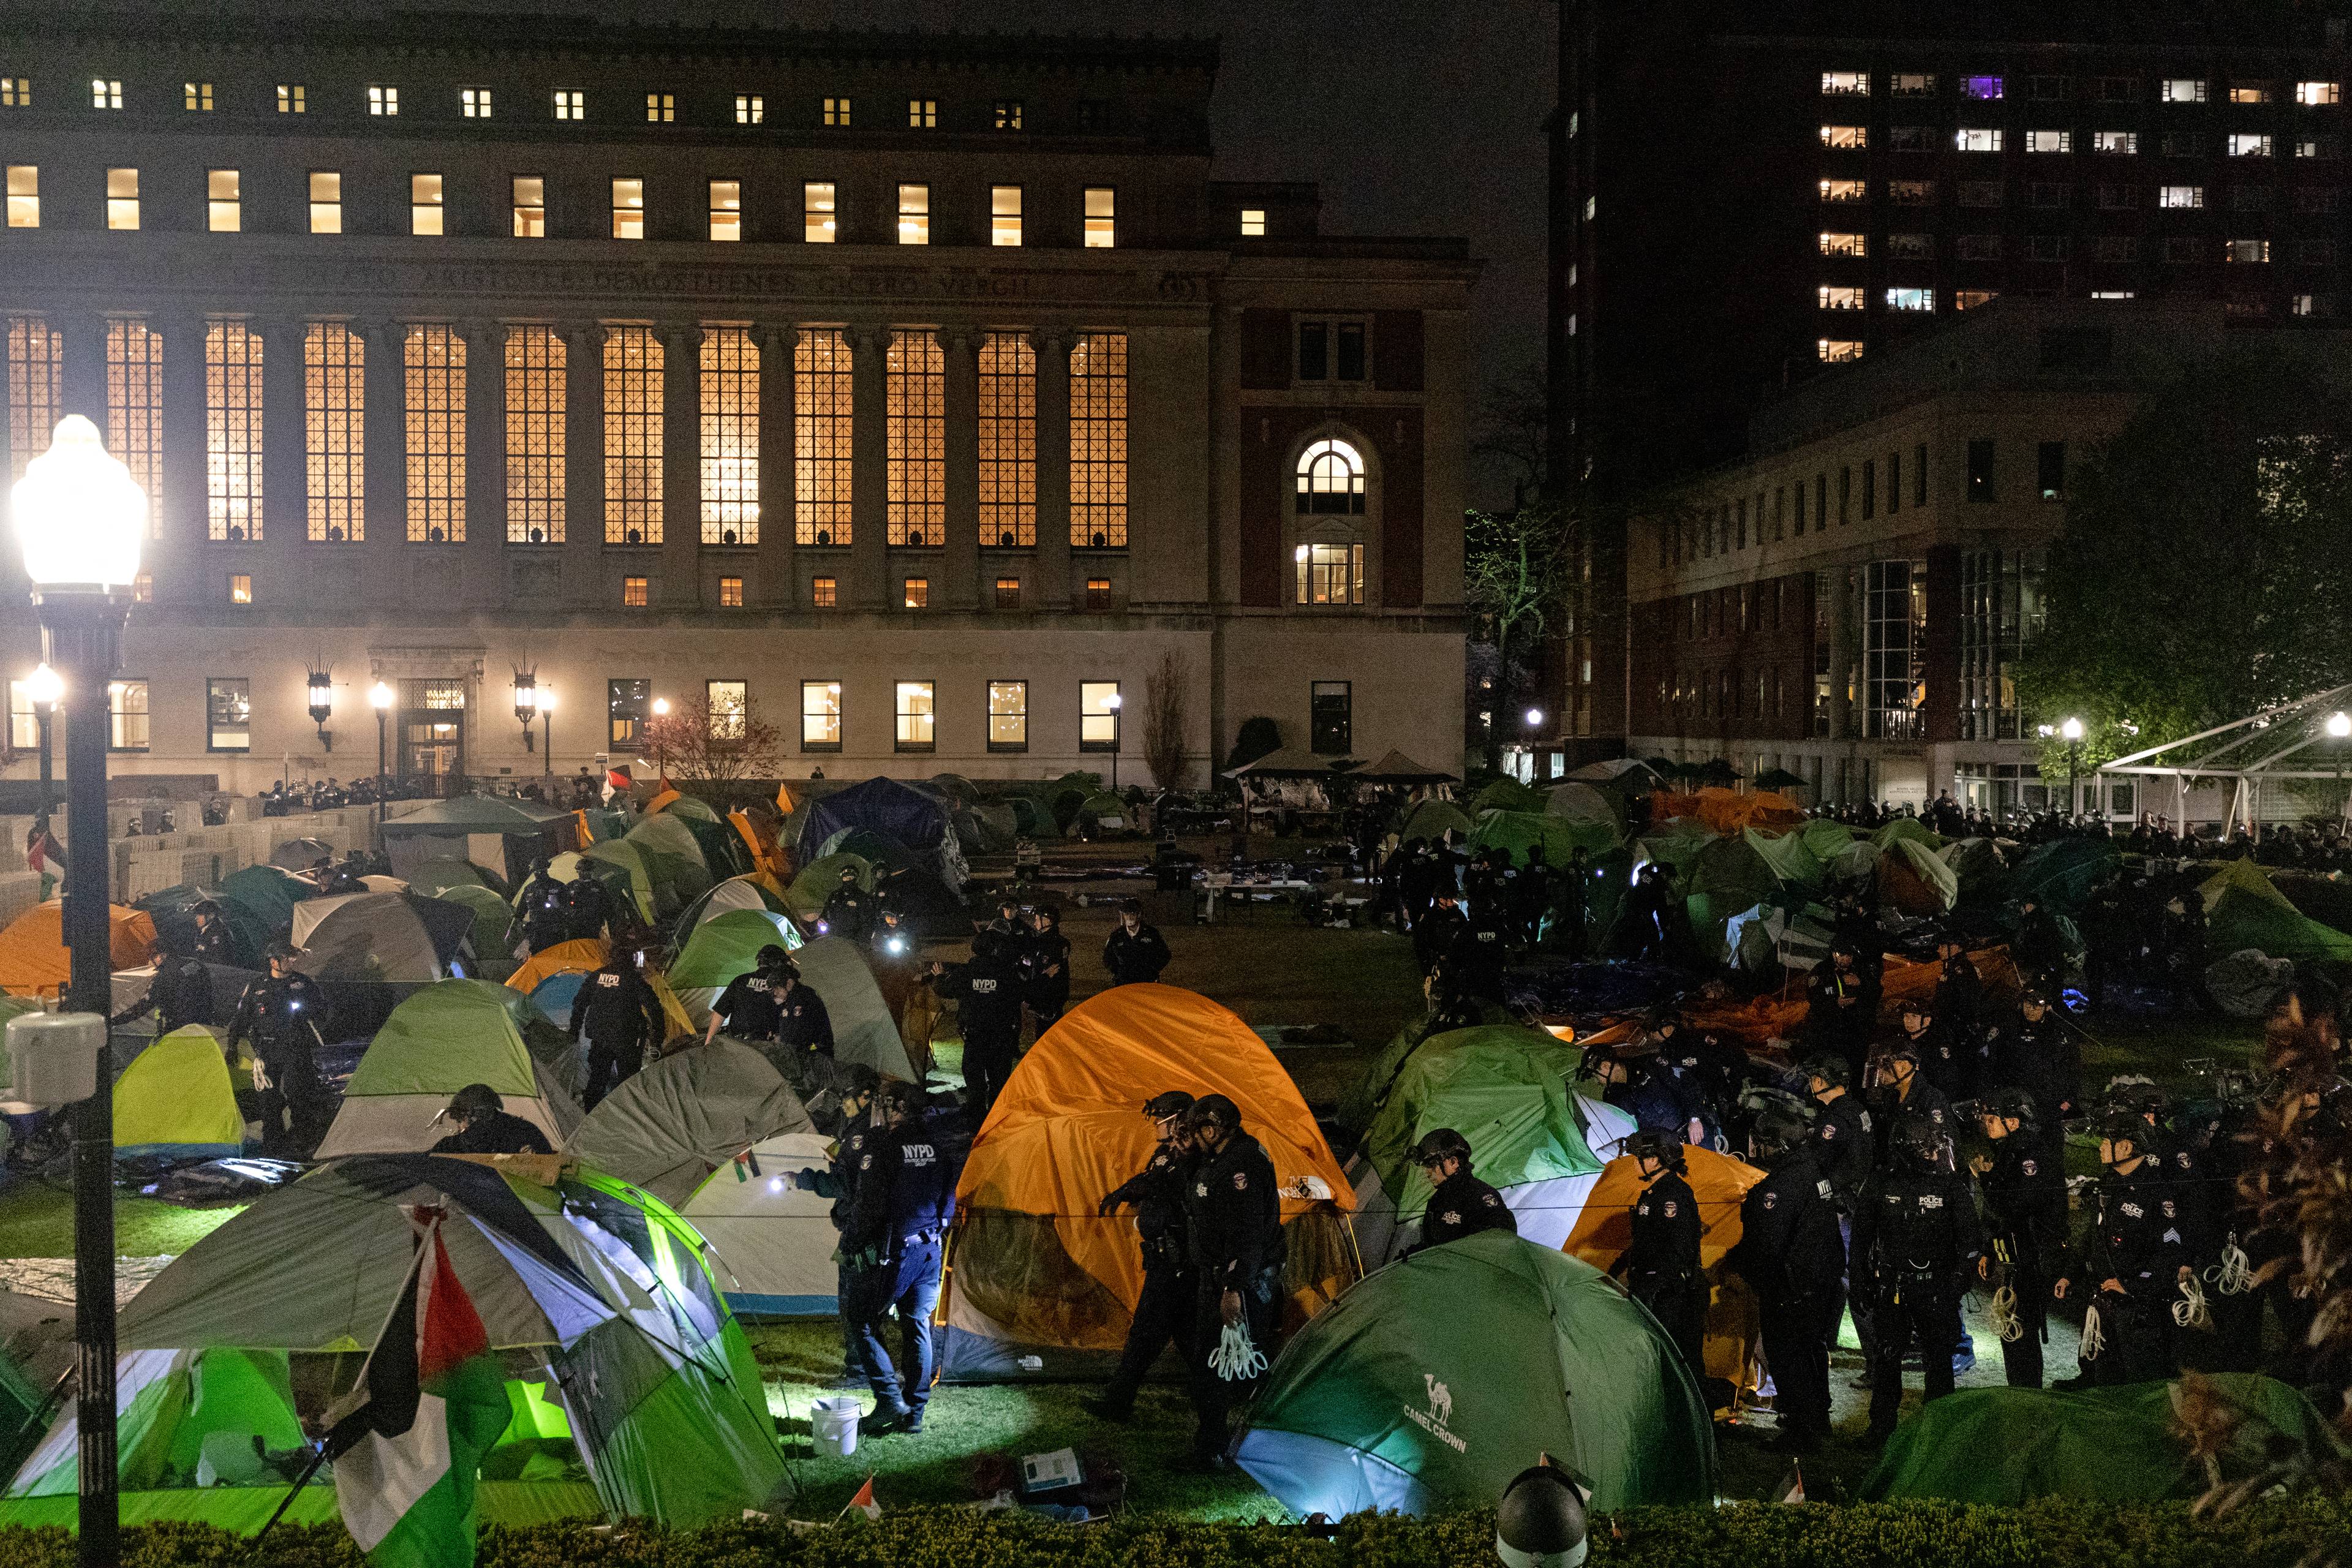 Duży trawnik pomiędzy budynkami Uniwersytetu COlumbia w Nowym Jorku, cały zastawiony namiotami, pomiędzy namiotami widać kordon policji, która zmierza w stronę okupowanego budynku. Jest późny wieczór, ciemno.